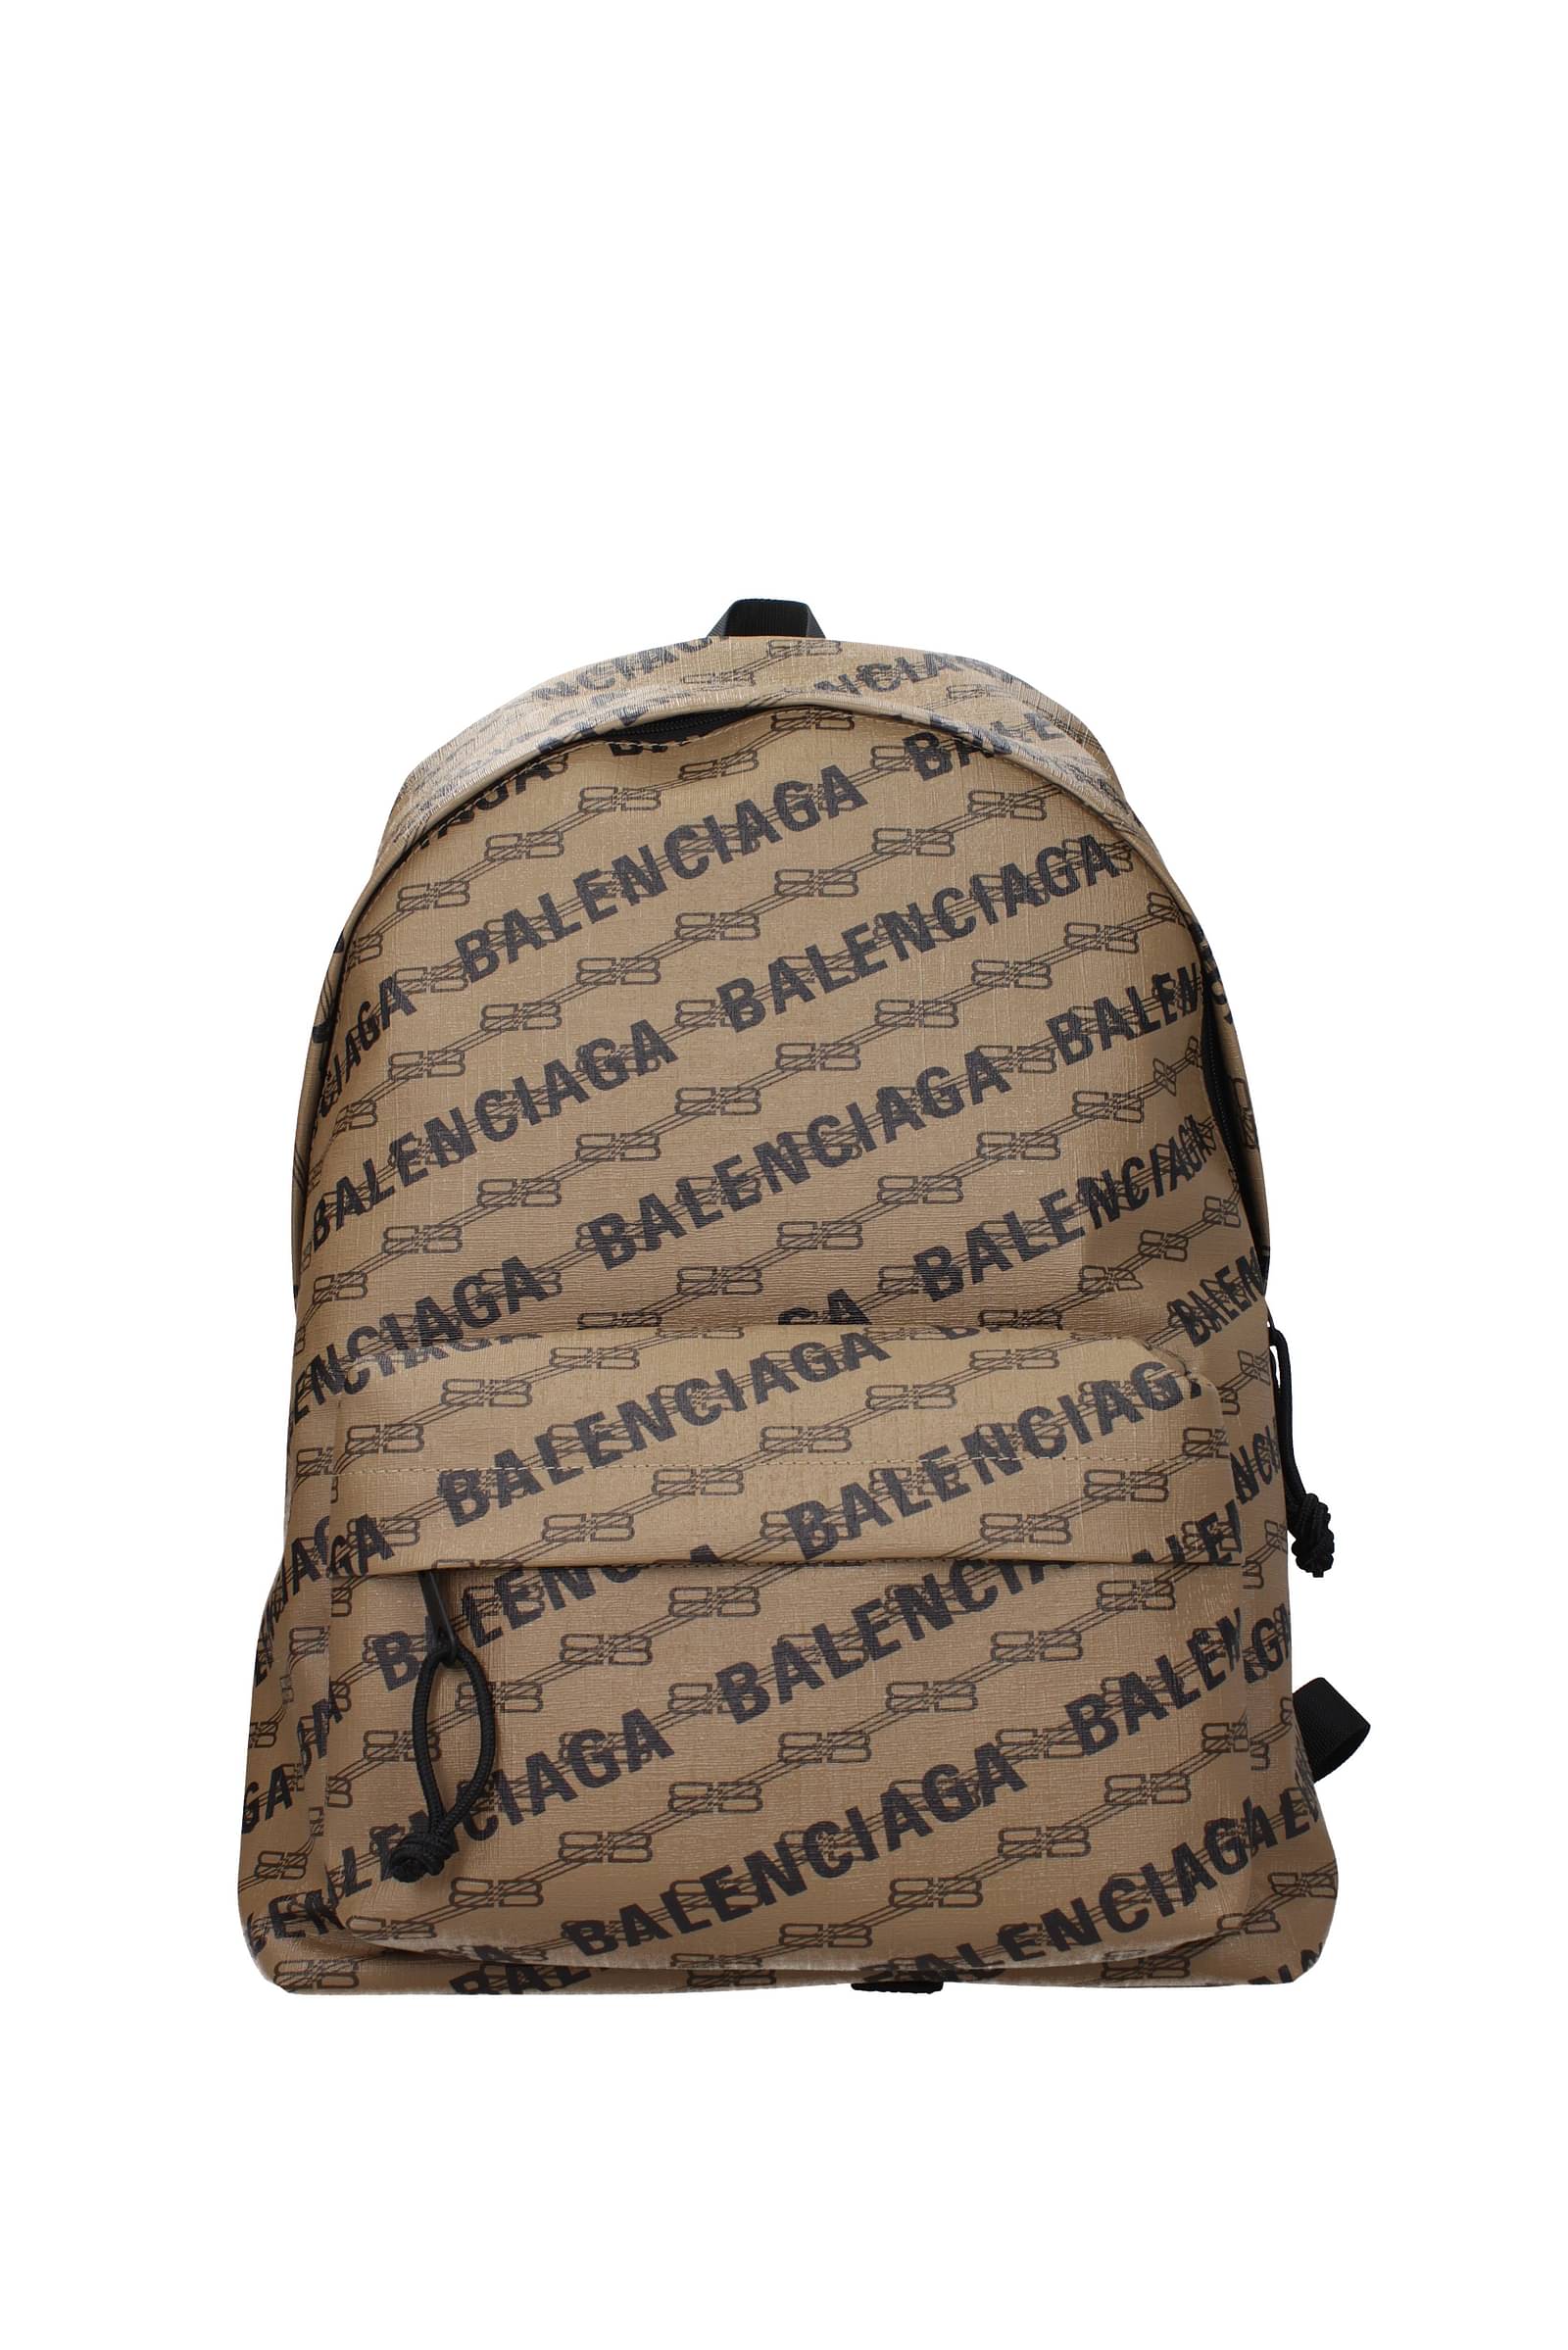 Balenciaga Bags for Men  Shop Now on FARFETCH